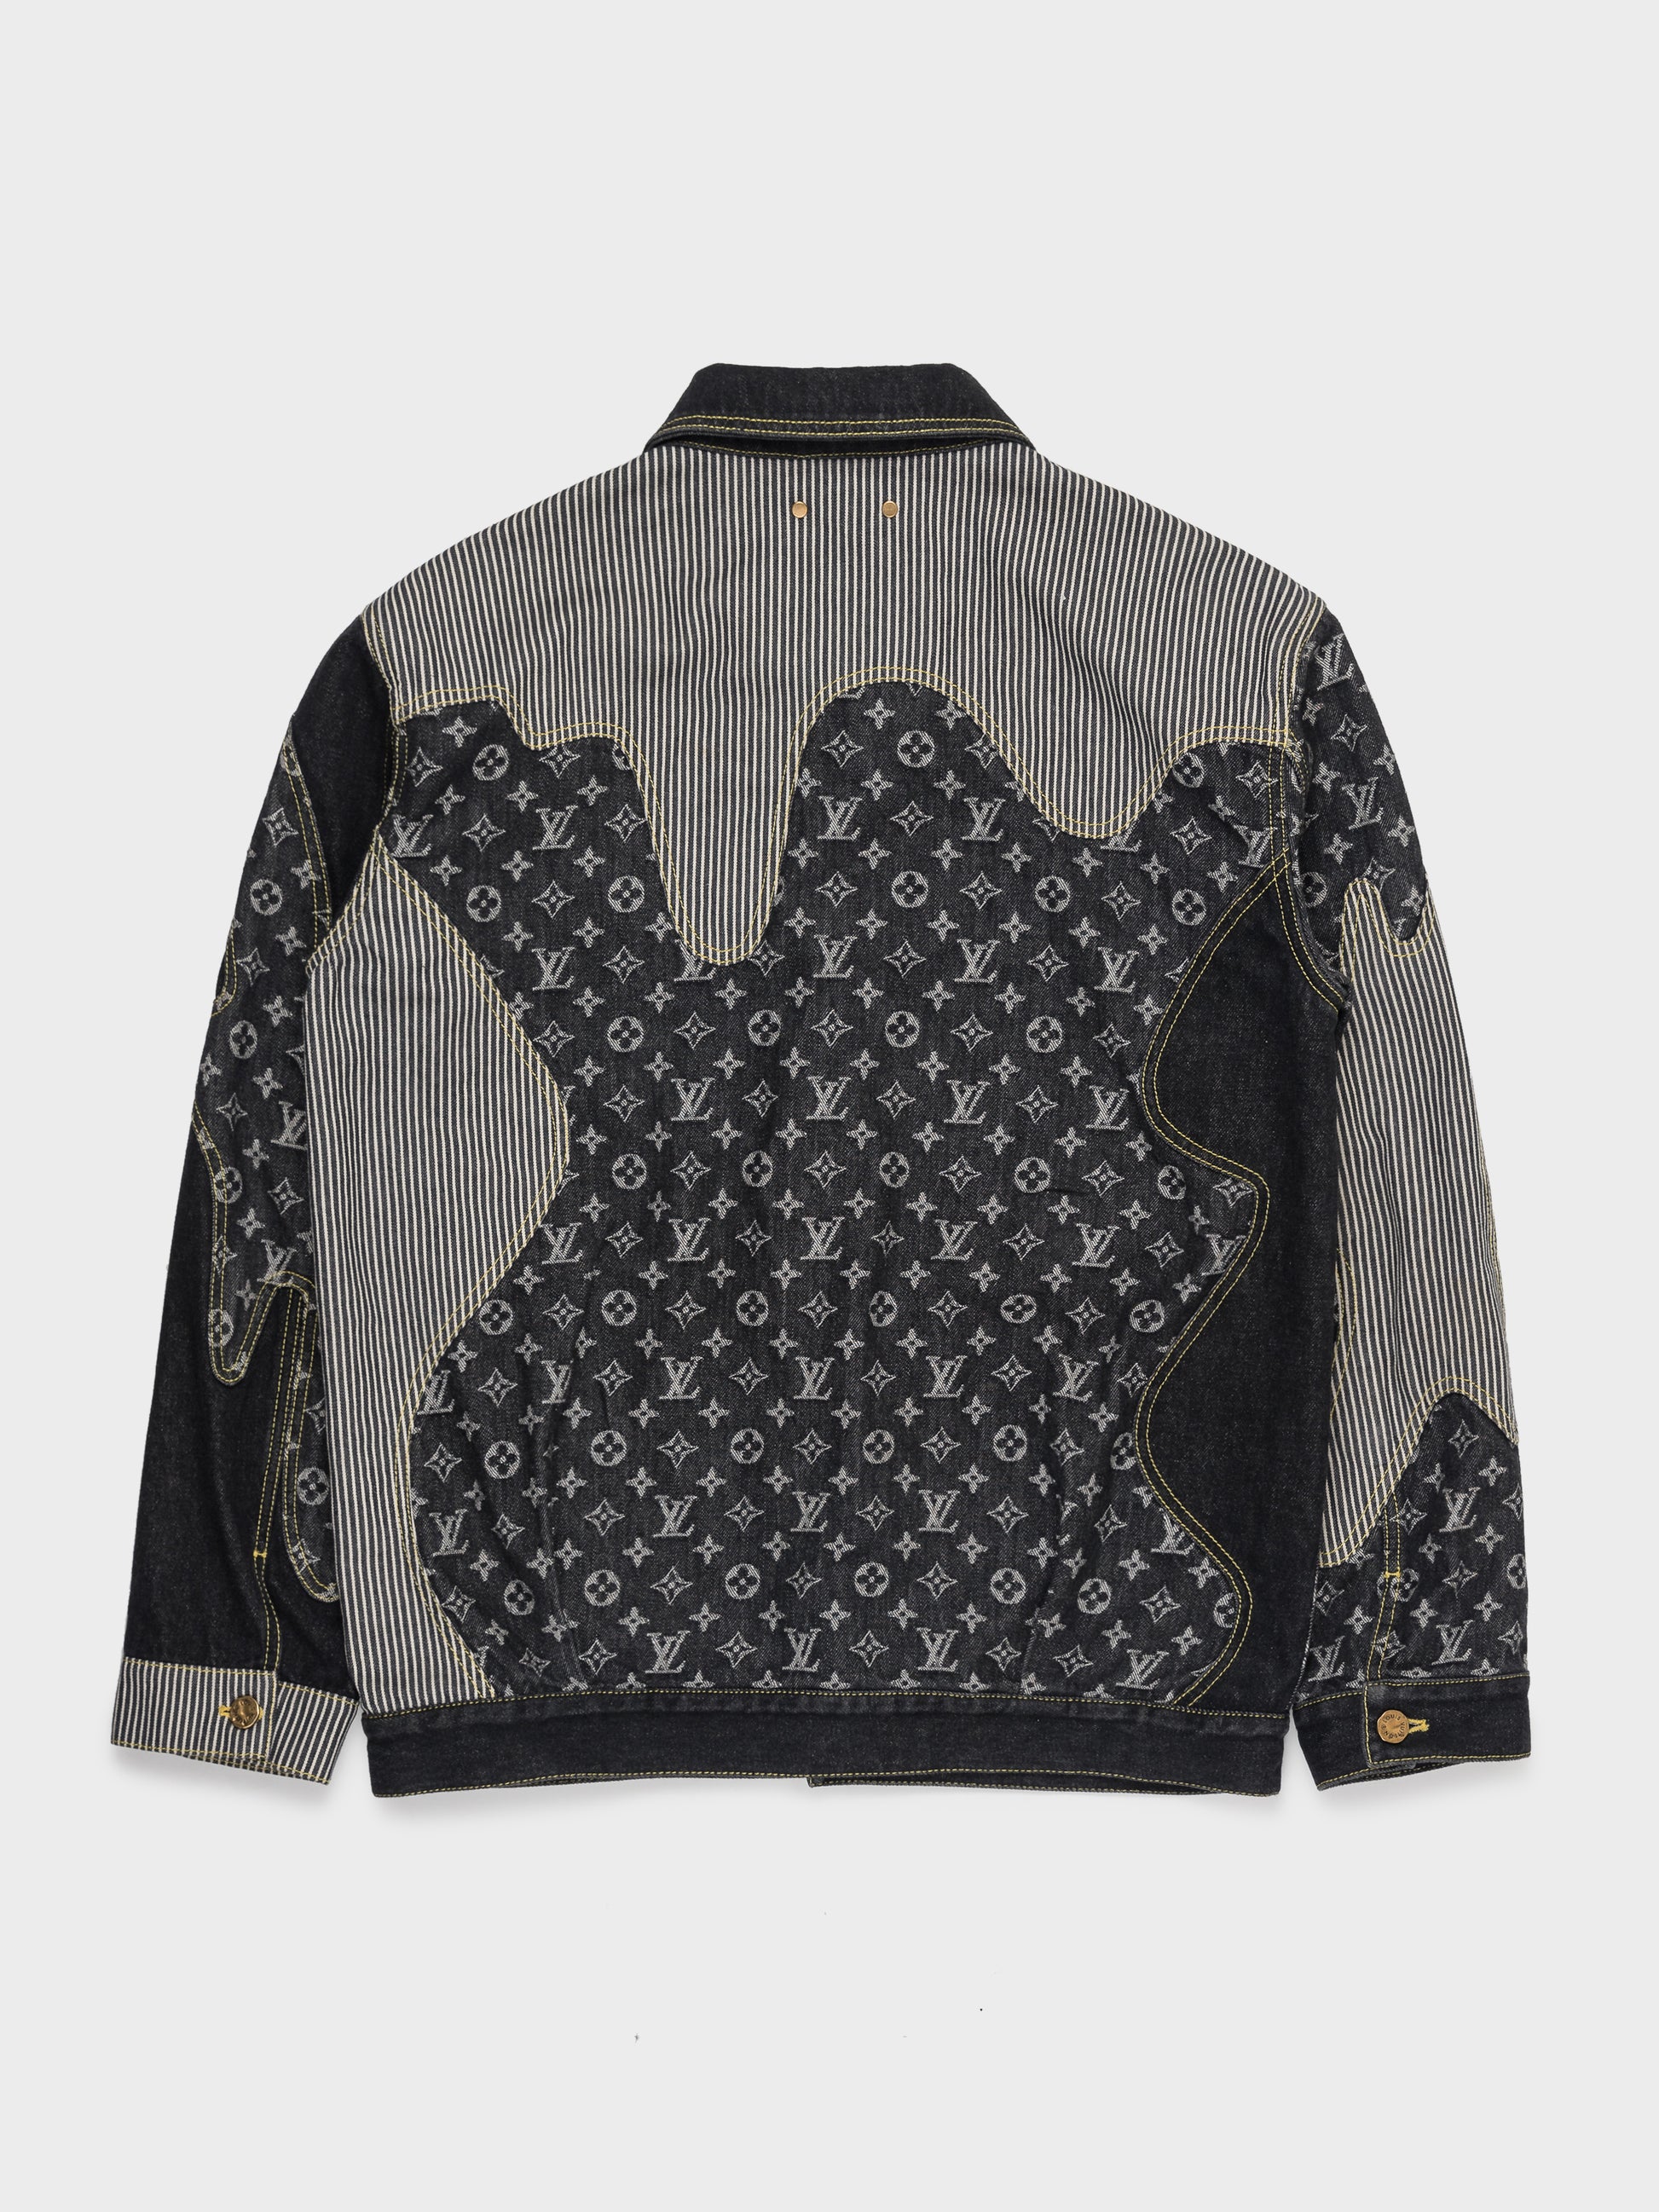 Louis Vuitton Monogram Printed Denim Jacket BLACK. Size 48